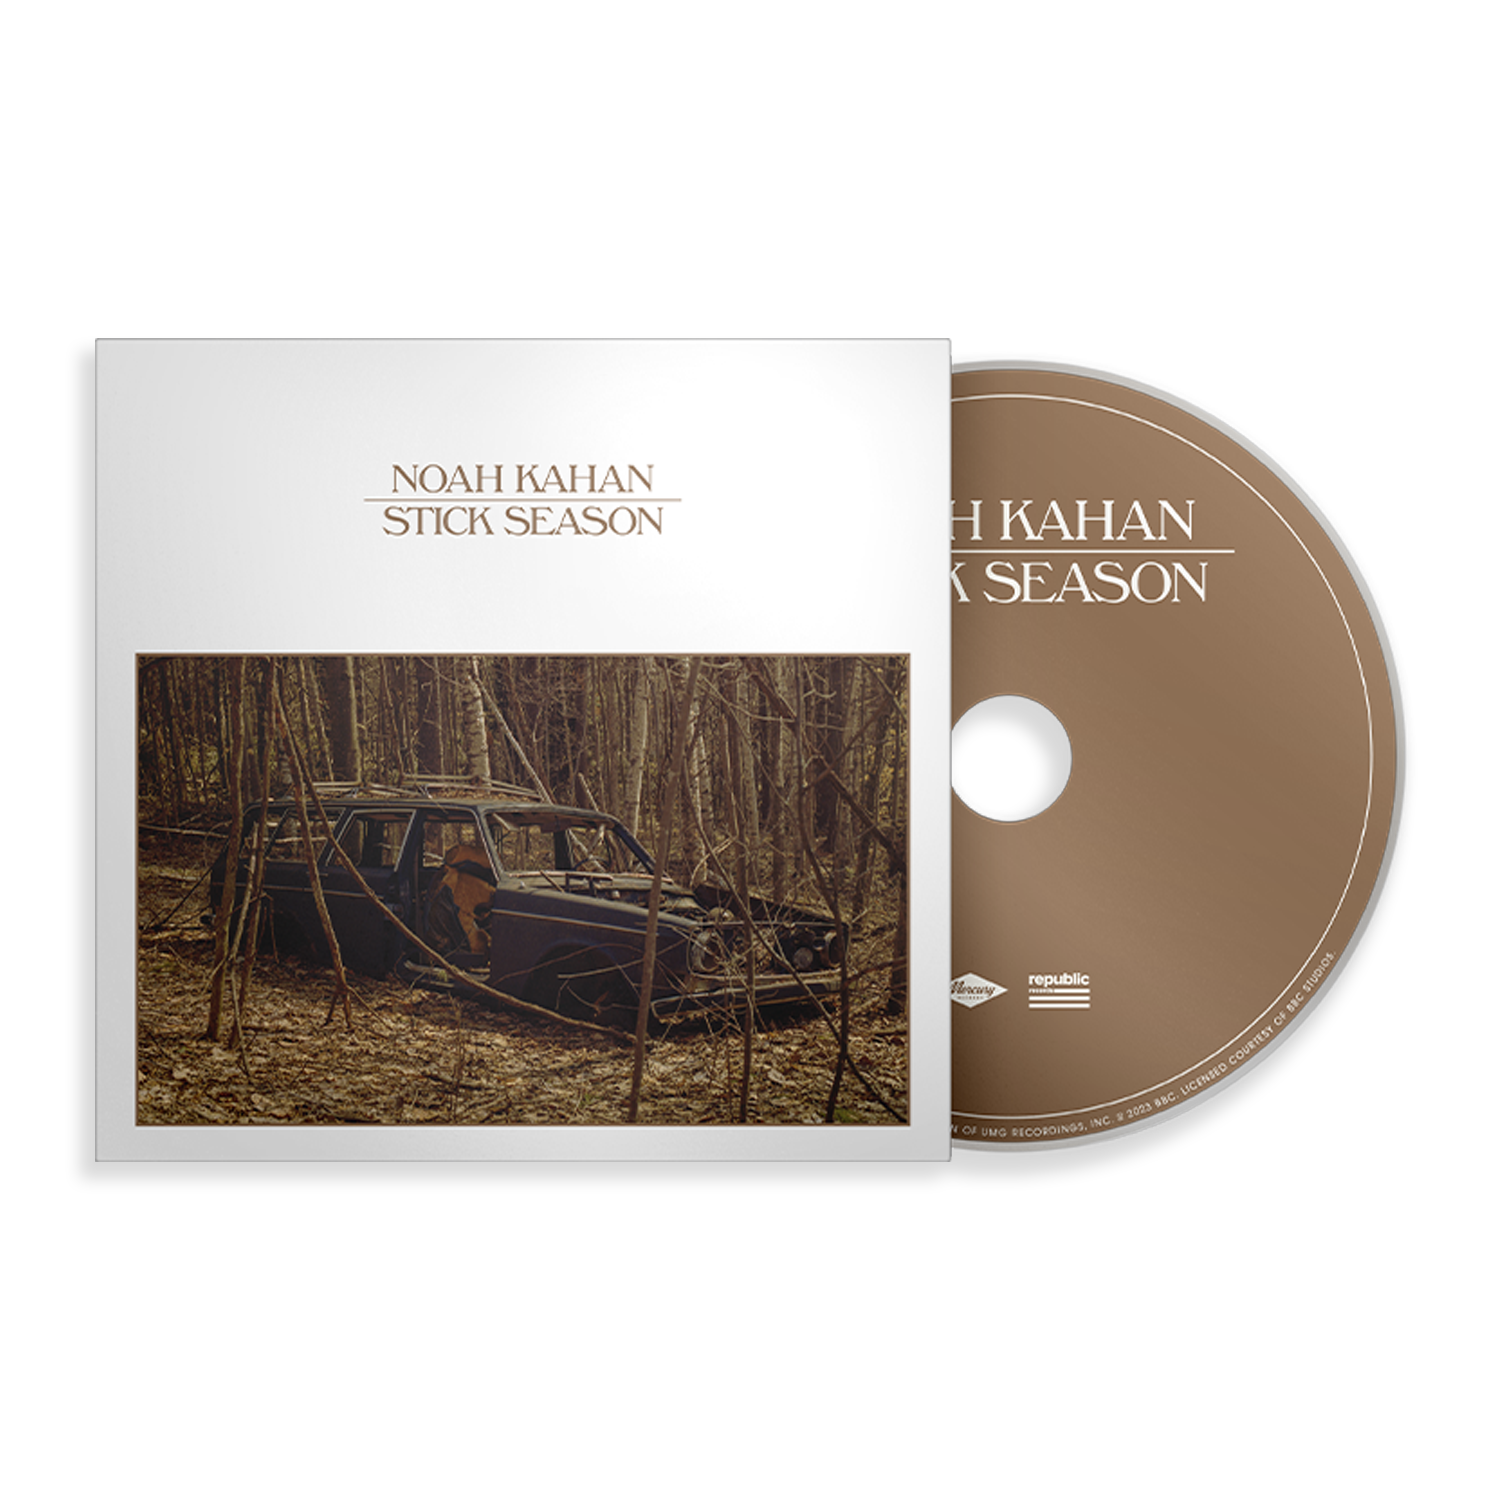 Noah Kahan - Stick Season: CD Single